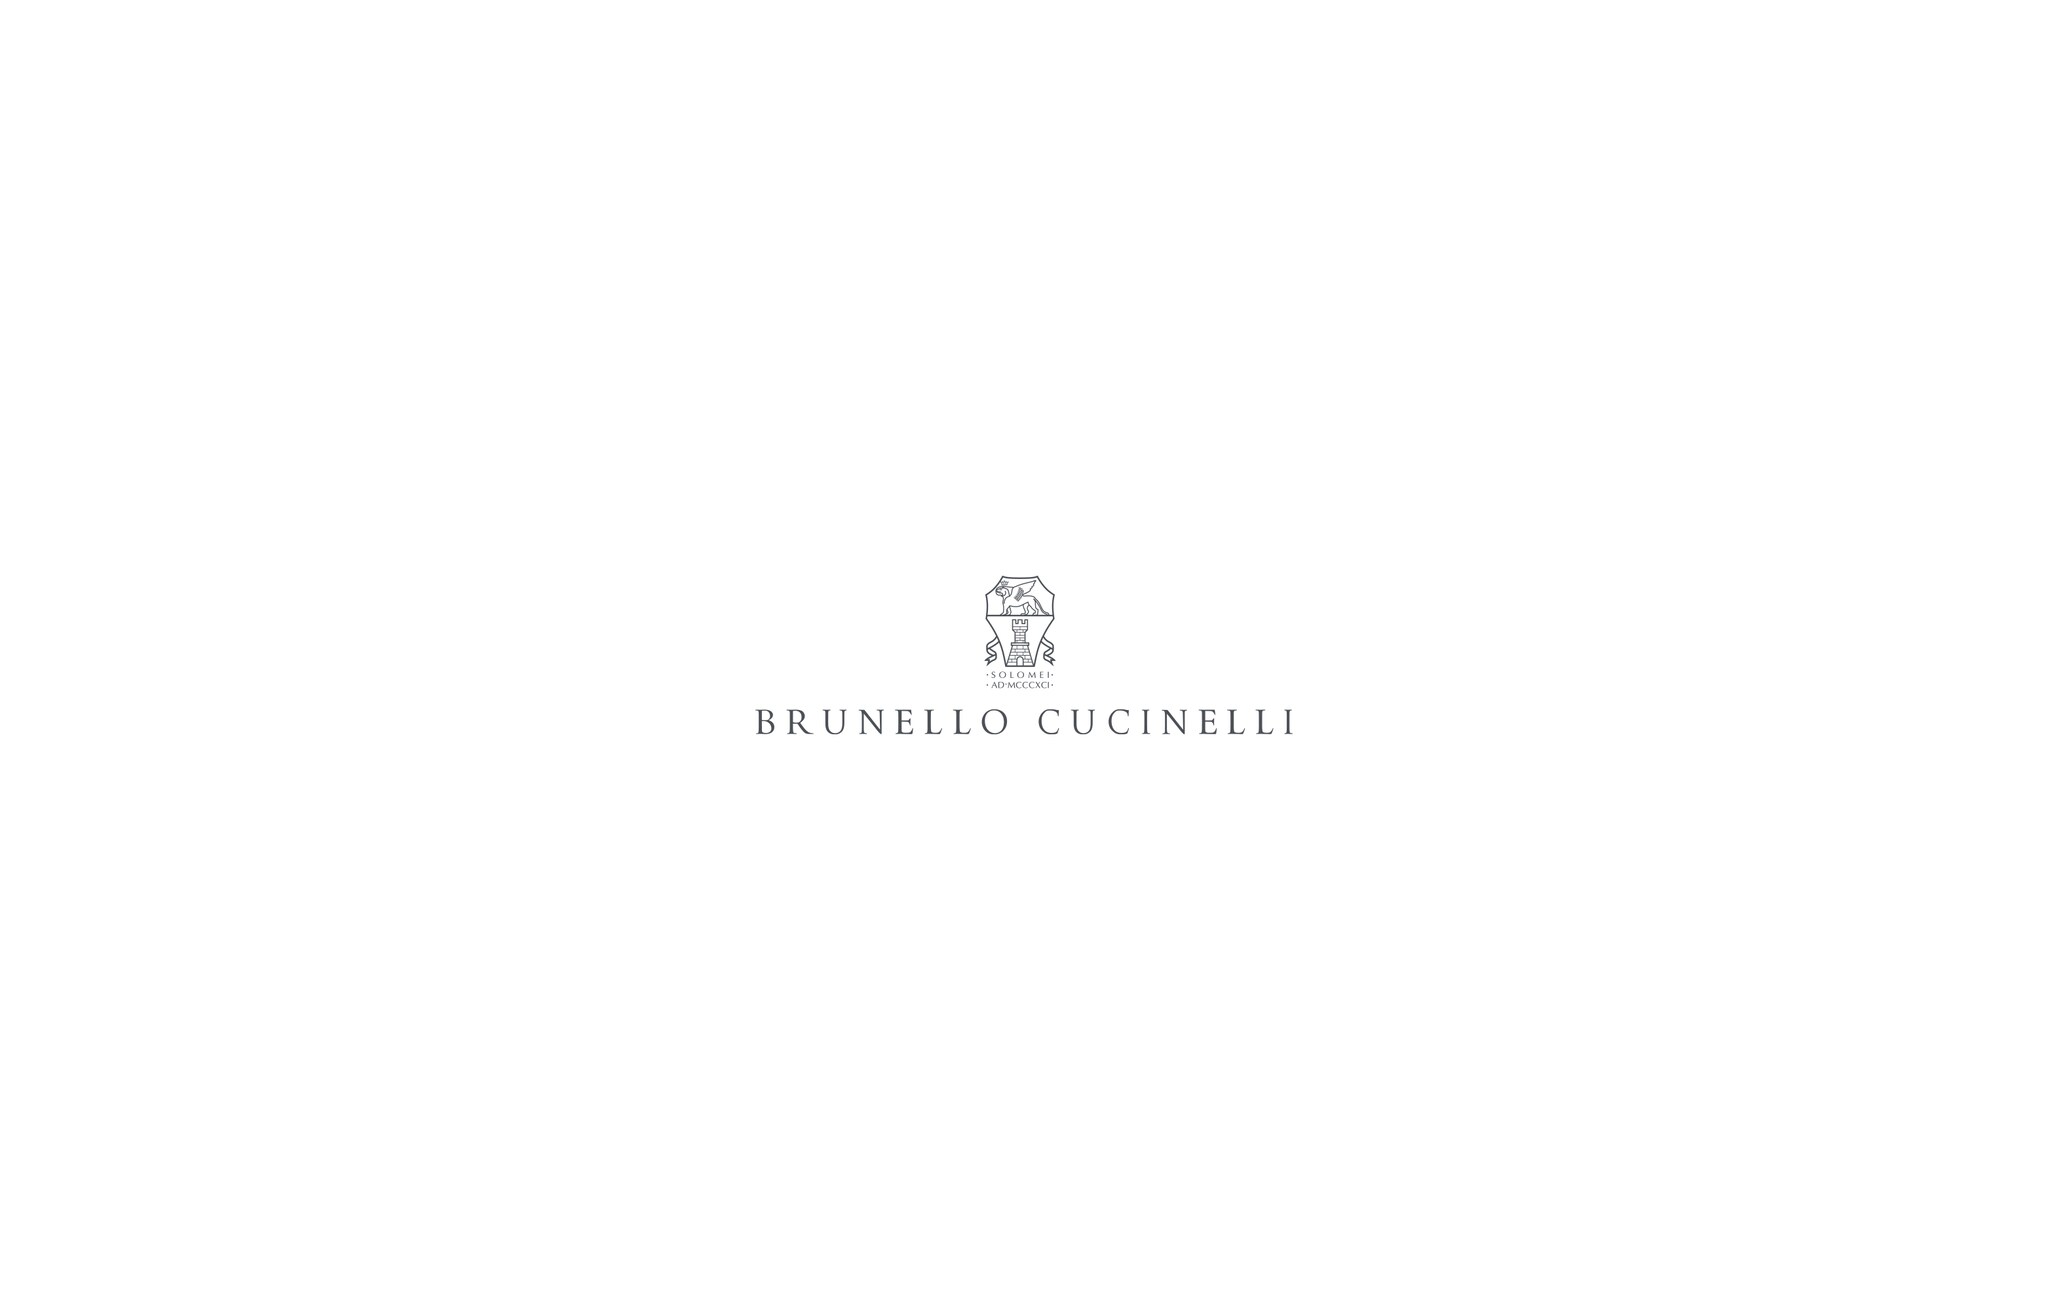  云纹毛衣 橙色 男款 - Brunello Cucinelli 